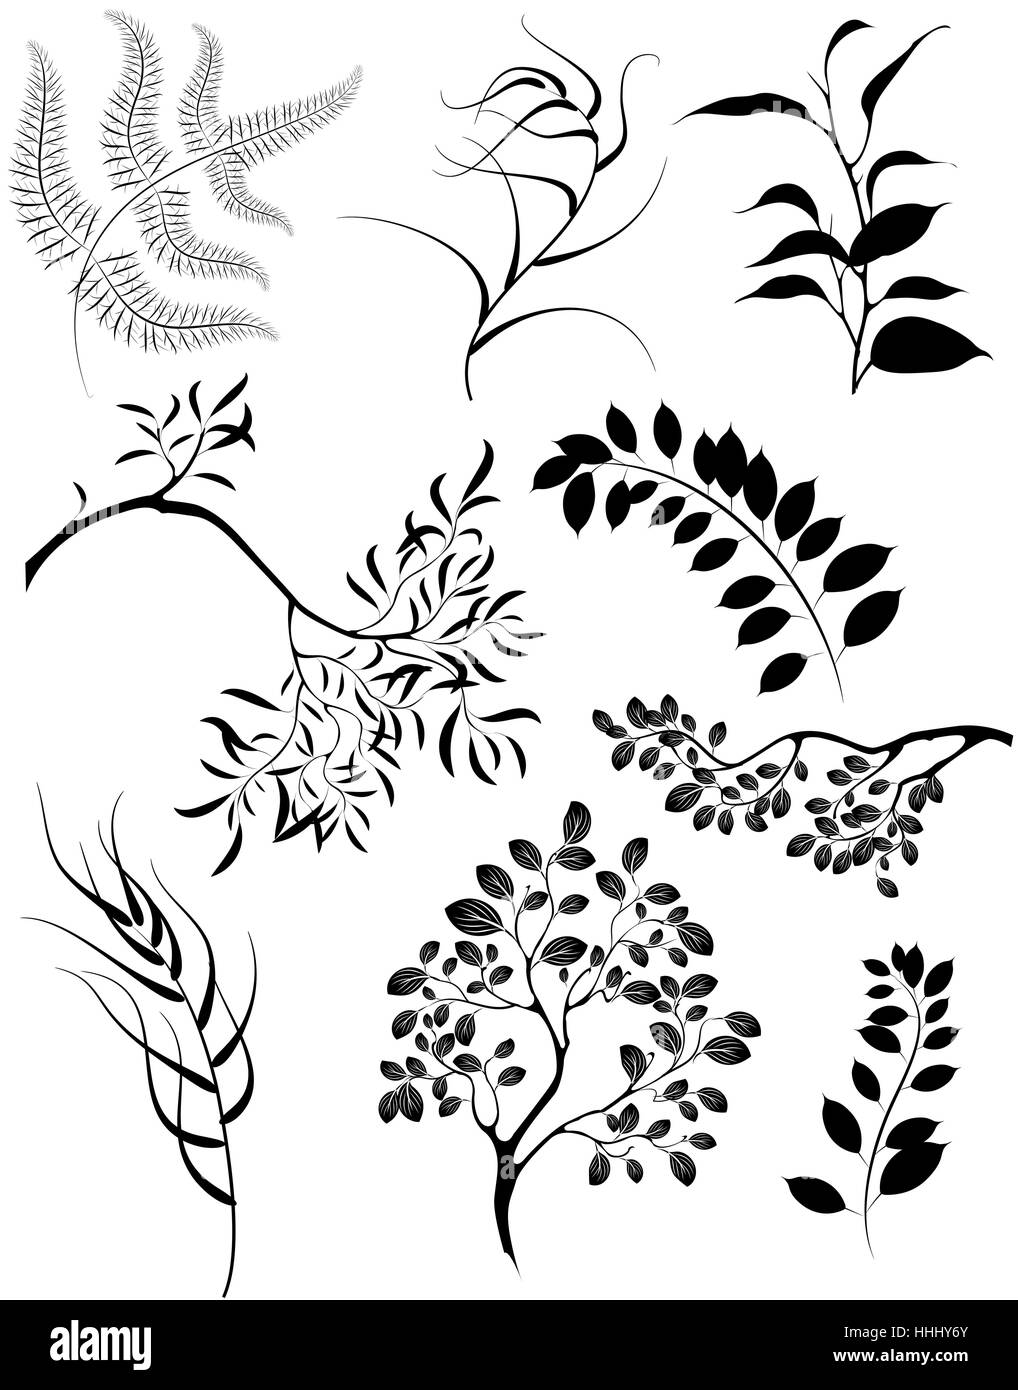 Artisticamente dipinte silhouette stilizzata di rami e piante decorative. Illustrazione Vettoriale